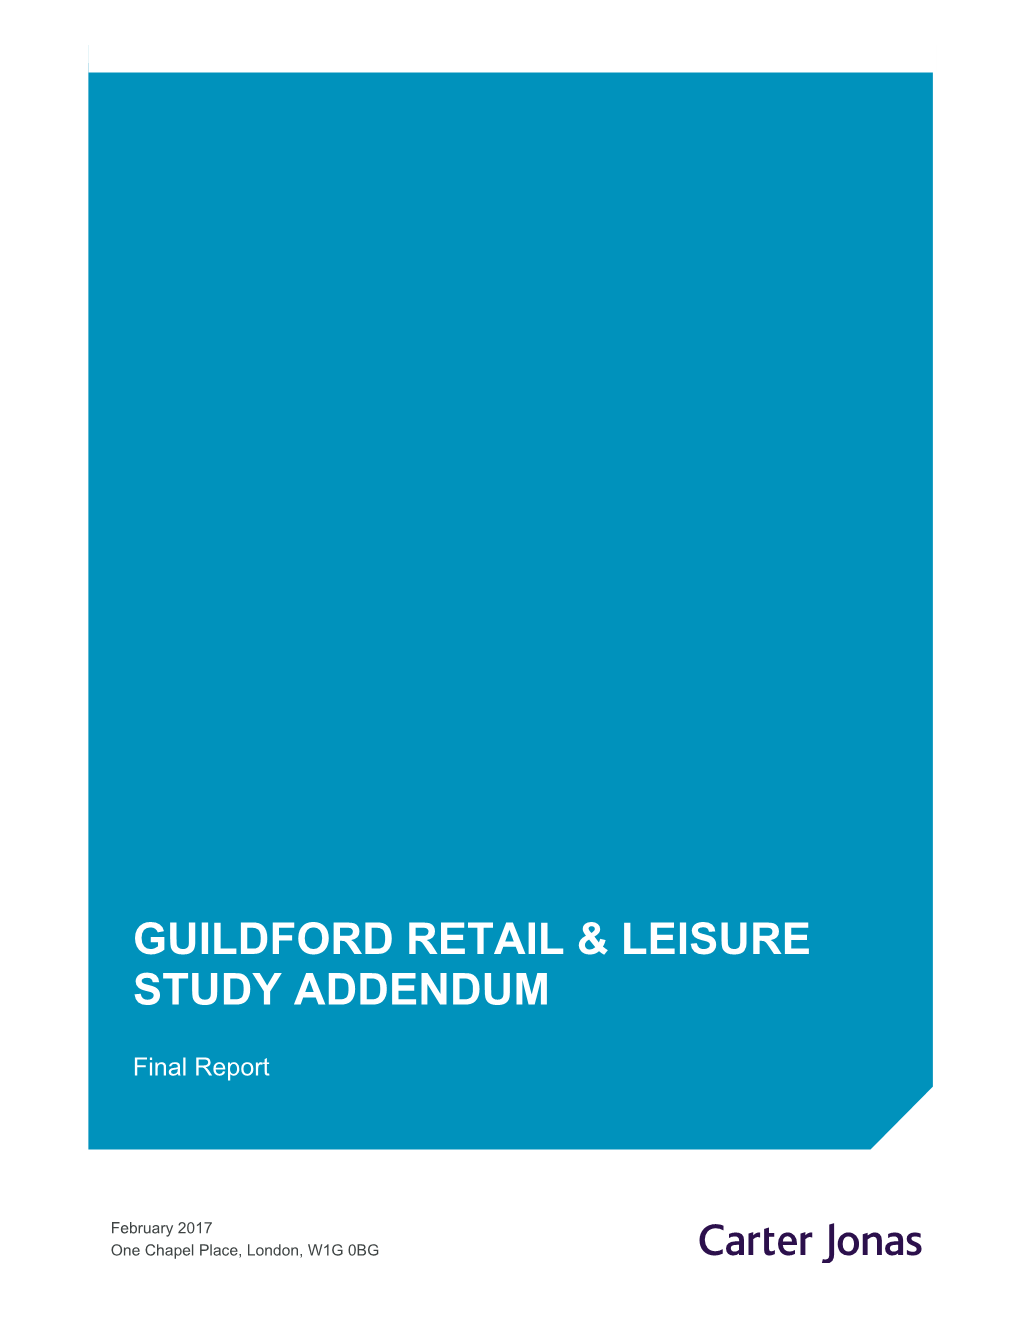 Guildford Retail & Leisure Study Addendum